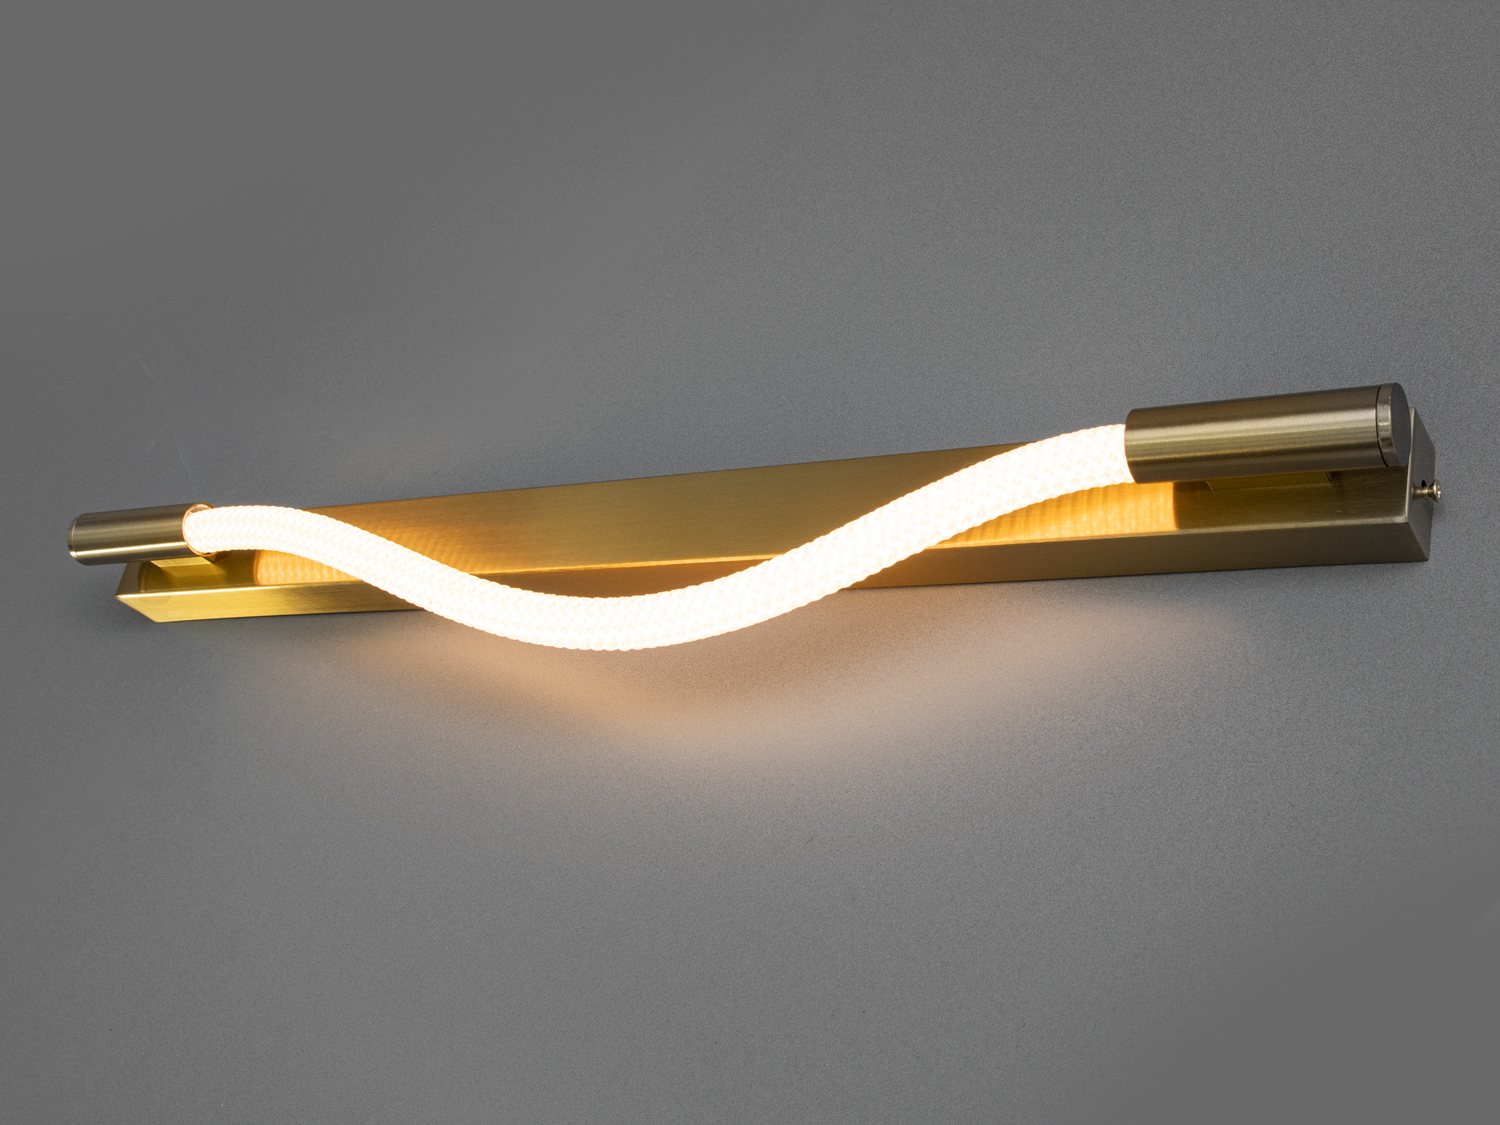 Сучасний світлодіодний світильник шланг потужністю 5 Вт, золотоСветодиодные бра, Светильники LED, Потолочные, Серия 